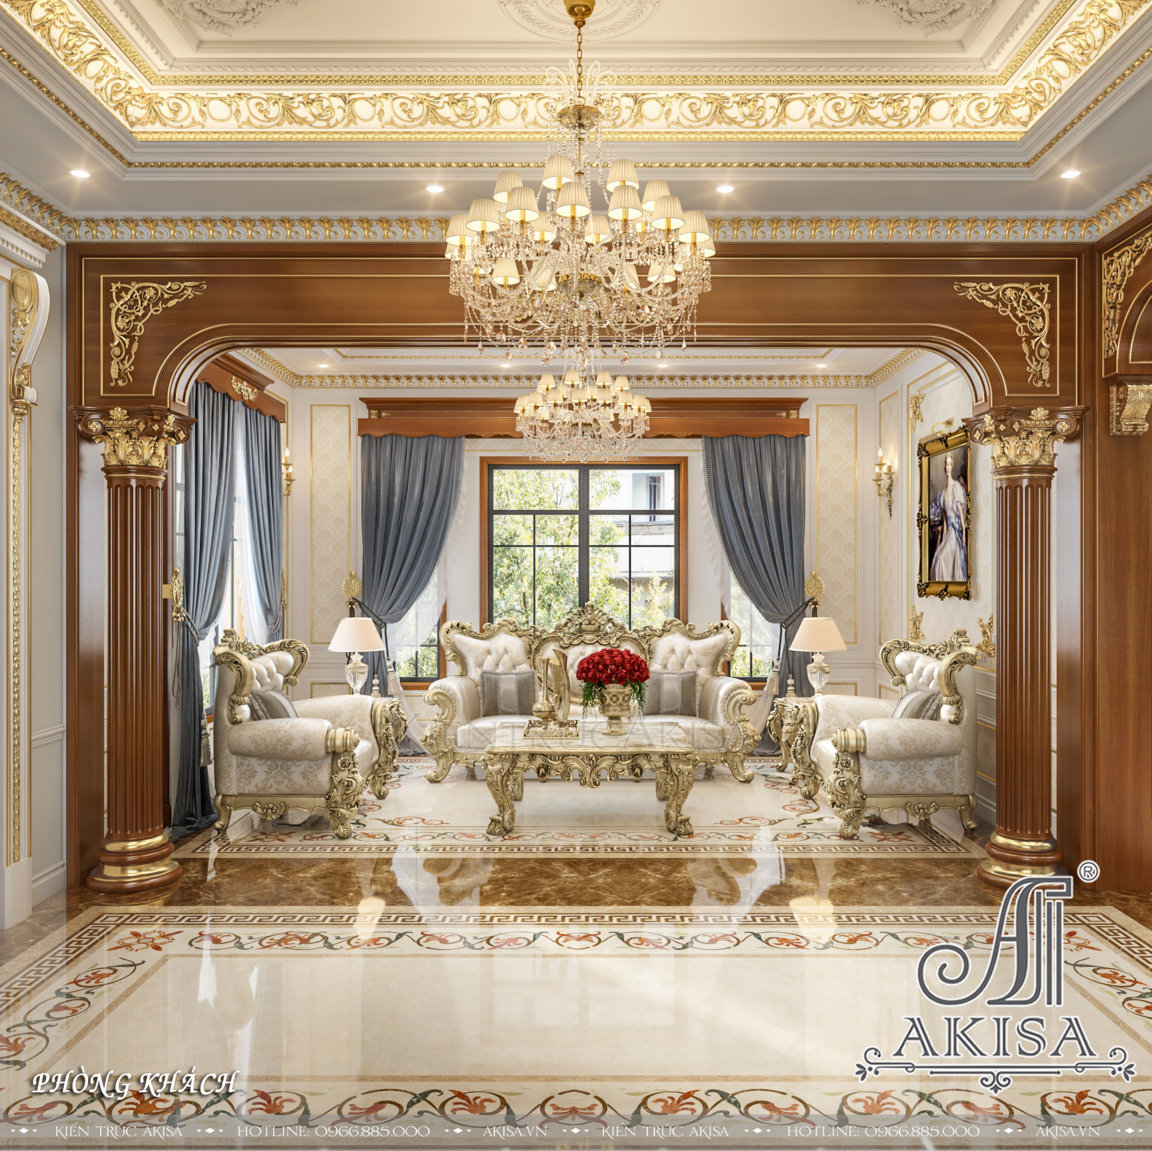 Sử dụng gam màu trắng kem kết hợp các họa tiết trang trí mạ vàng nơi diện tường, thức cột, bàn, ghế sa lông mang đến vẻ đẹp sang trọng lộng lẫy cho phòng khách